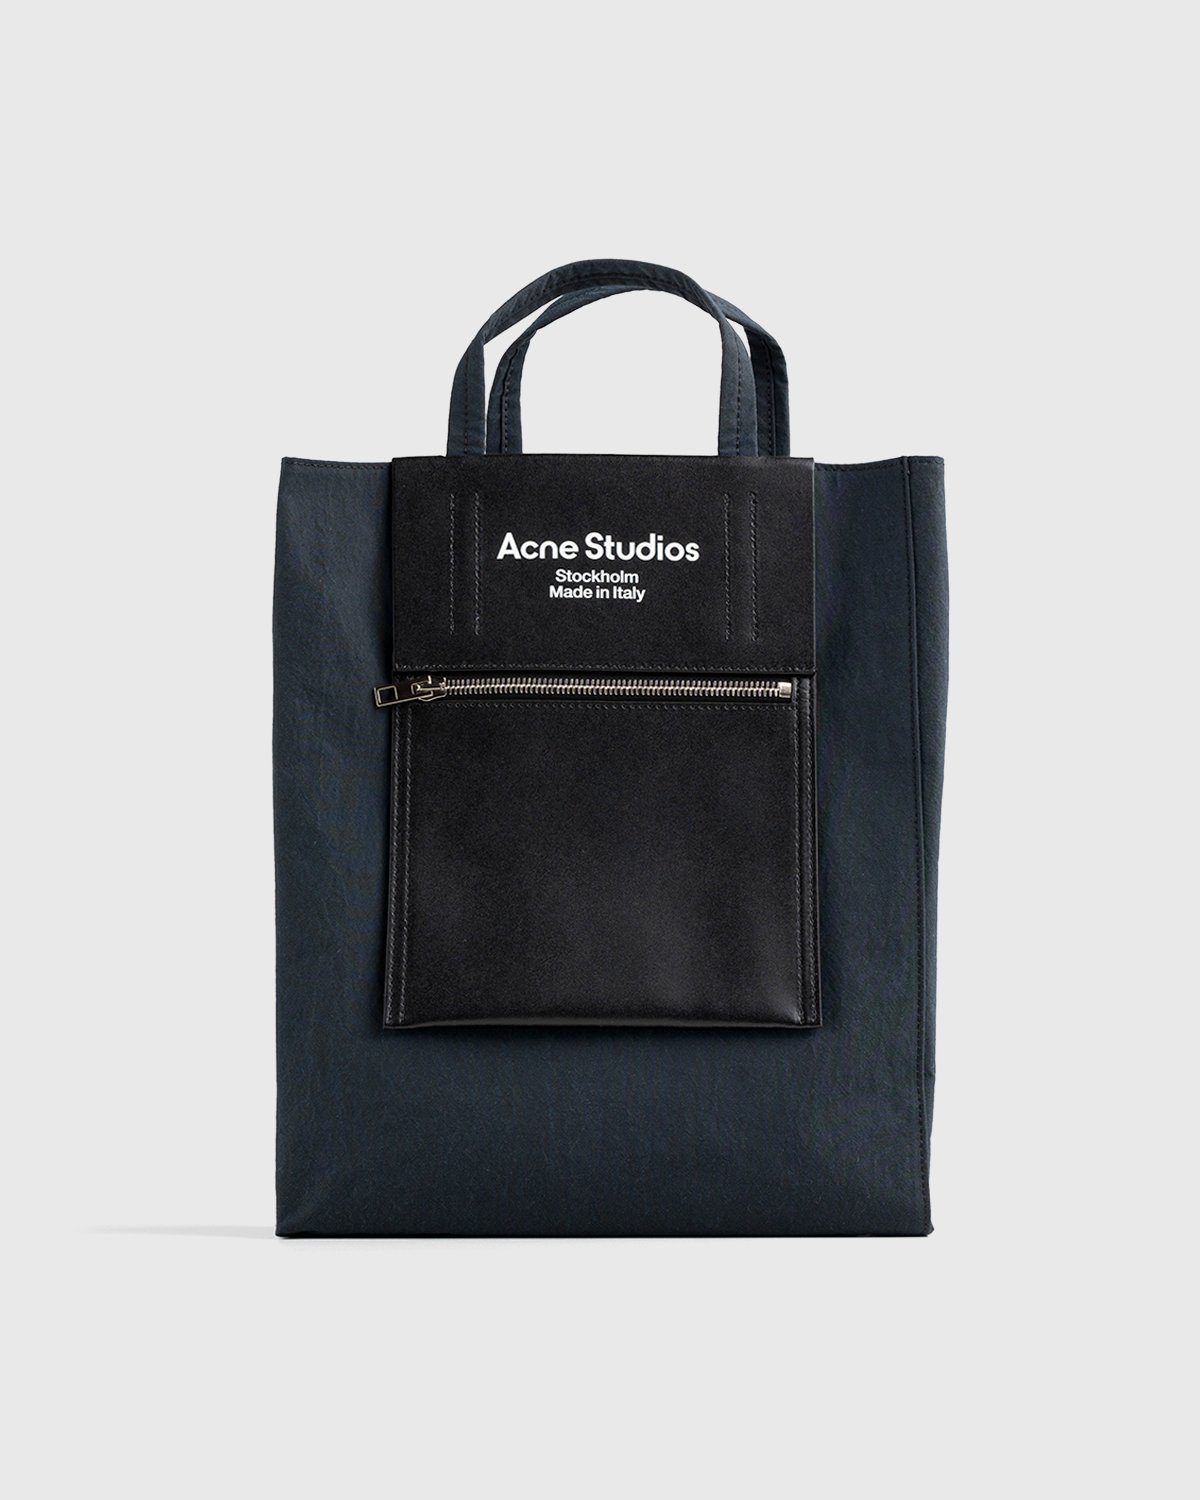 Acne Studios - Medium Nylon Tote Bag Black - Accessories - Black - Image 1